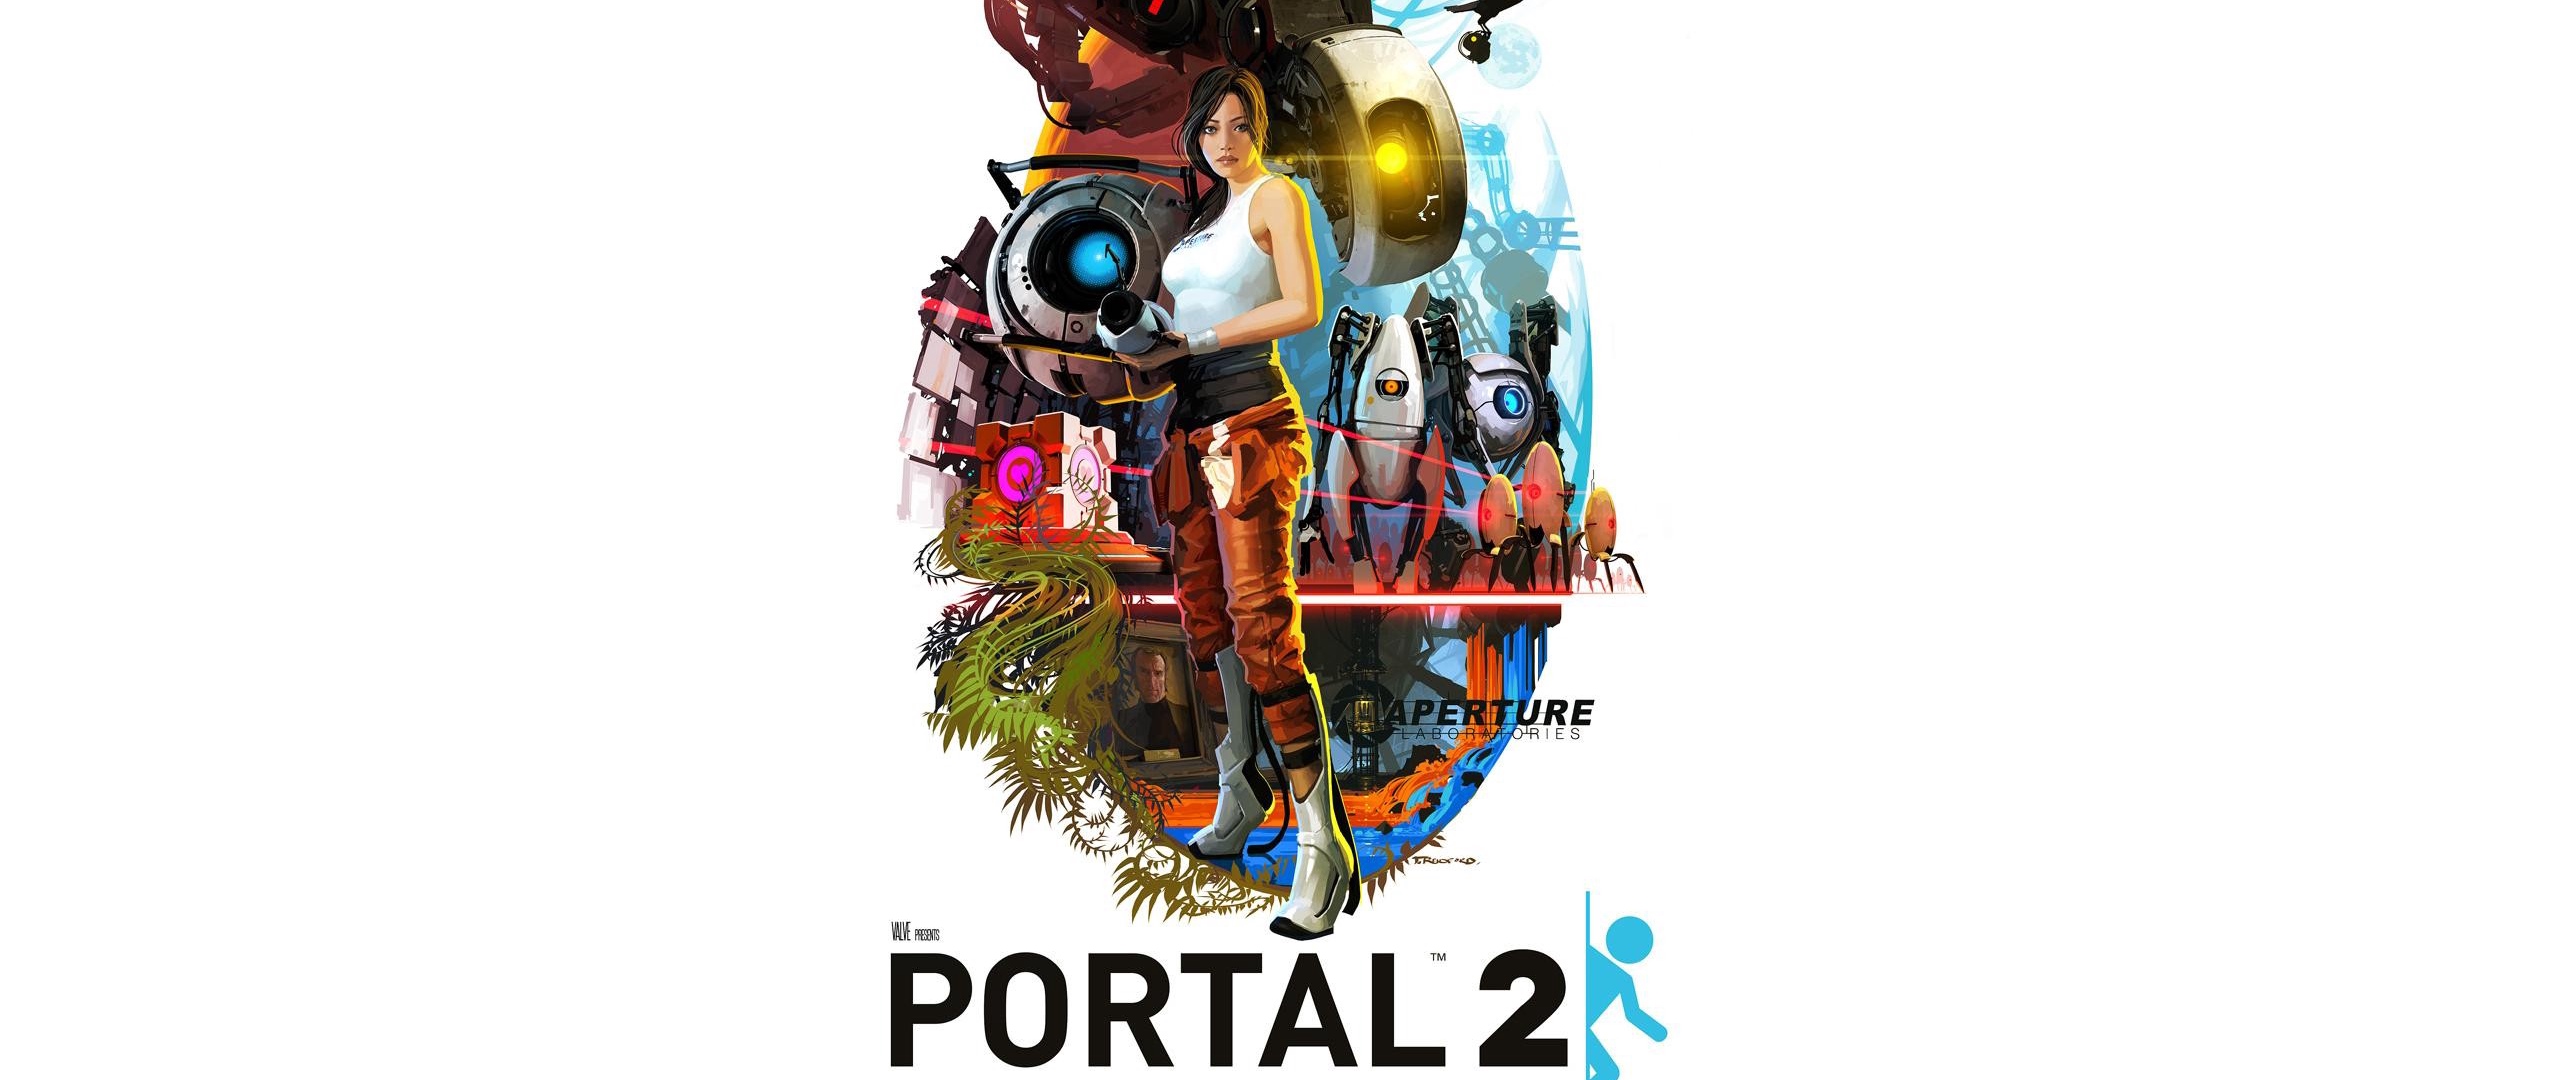 Wallpaper Portal, Portal 2, Game, Art - Portal 2 - HD Wallpaper 